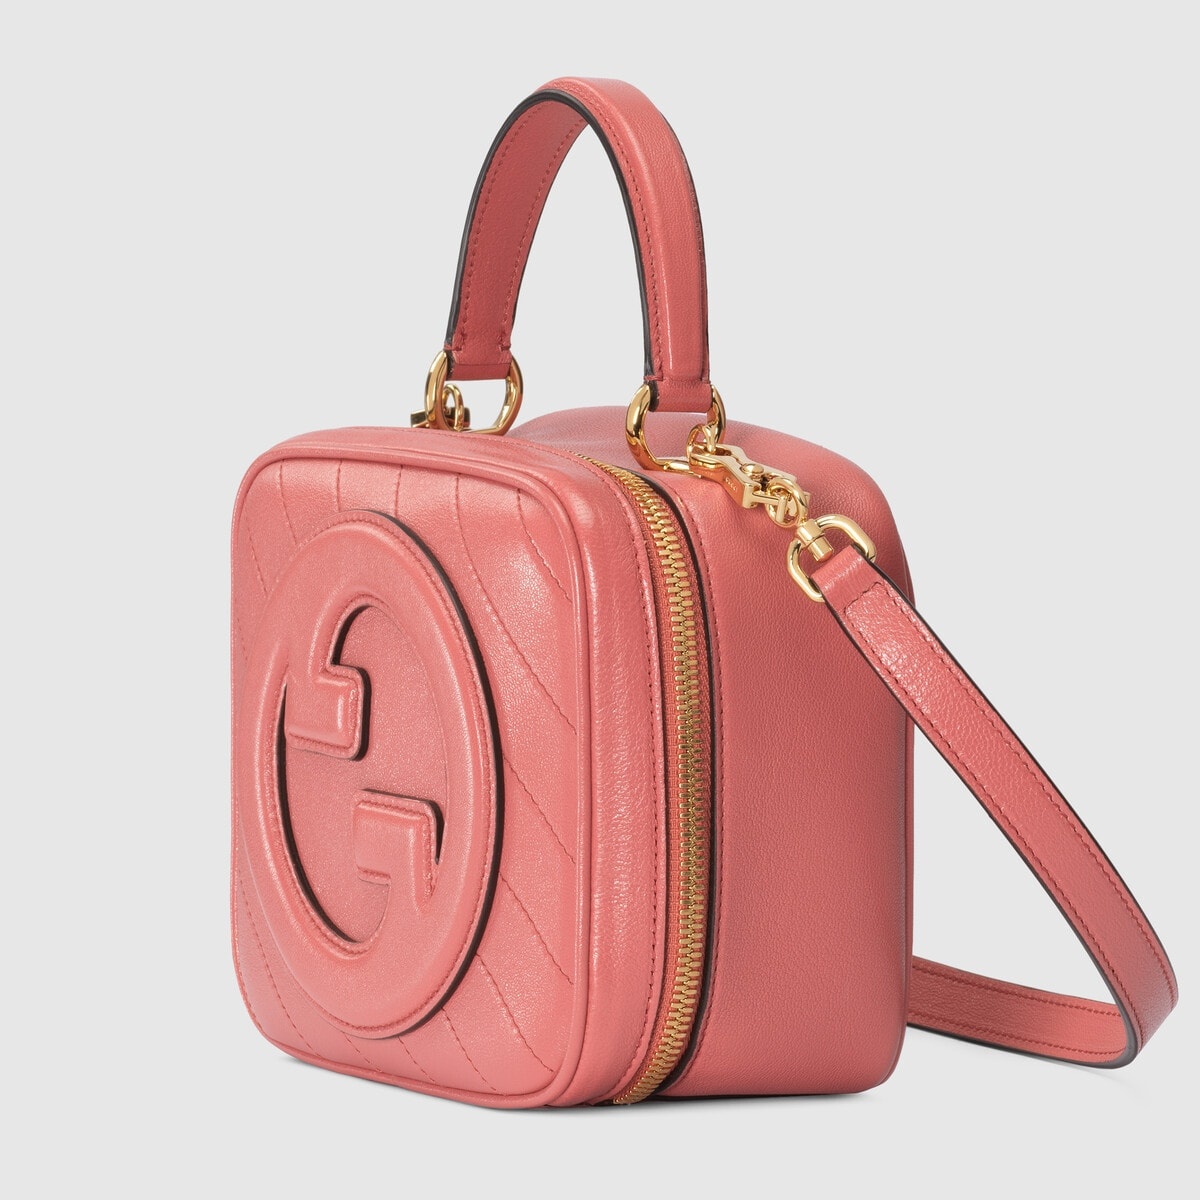 Gucci Blondie top handle bag - 2